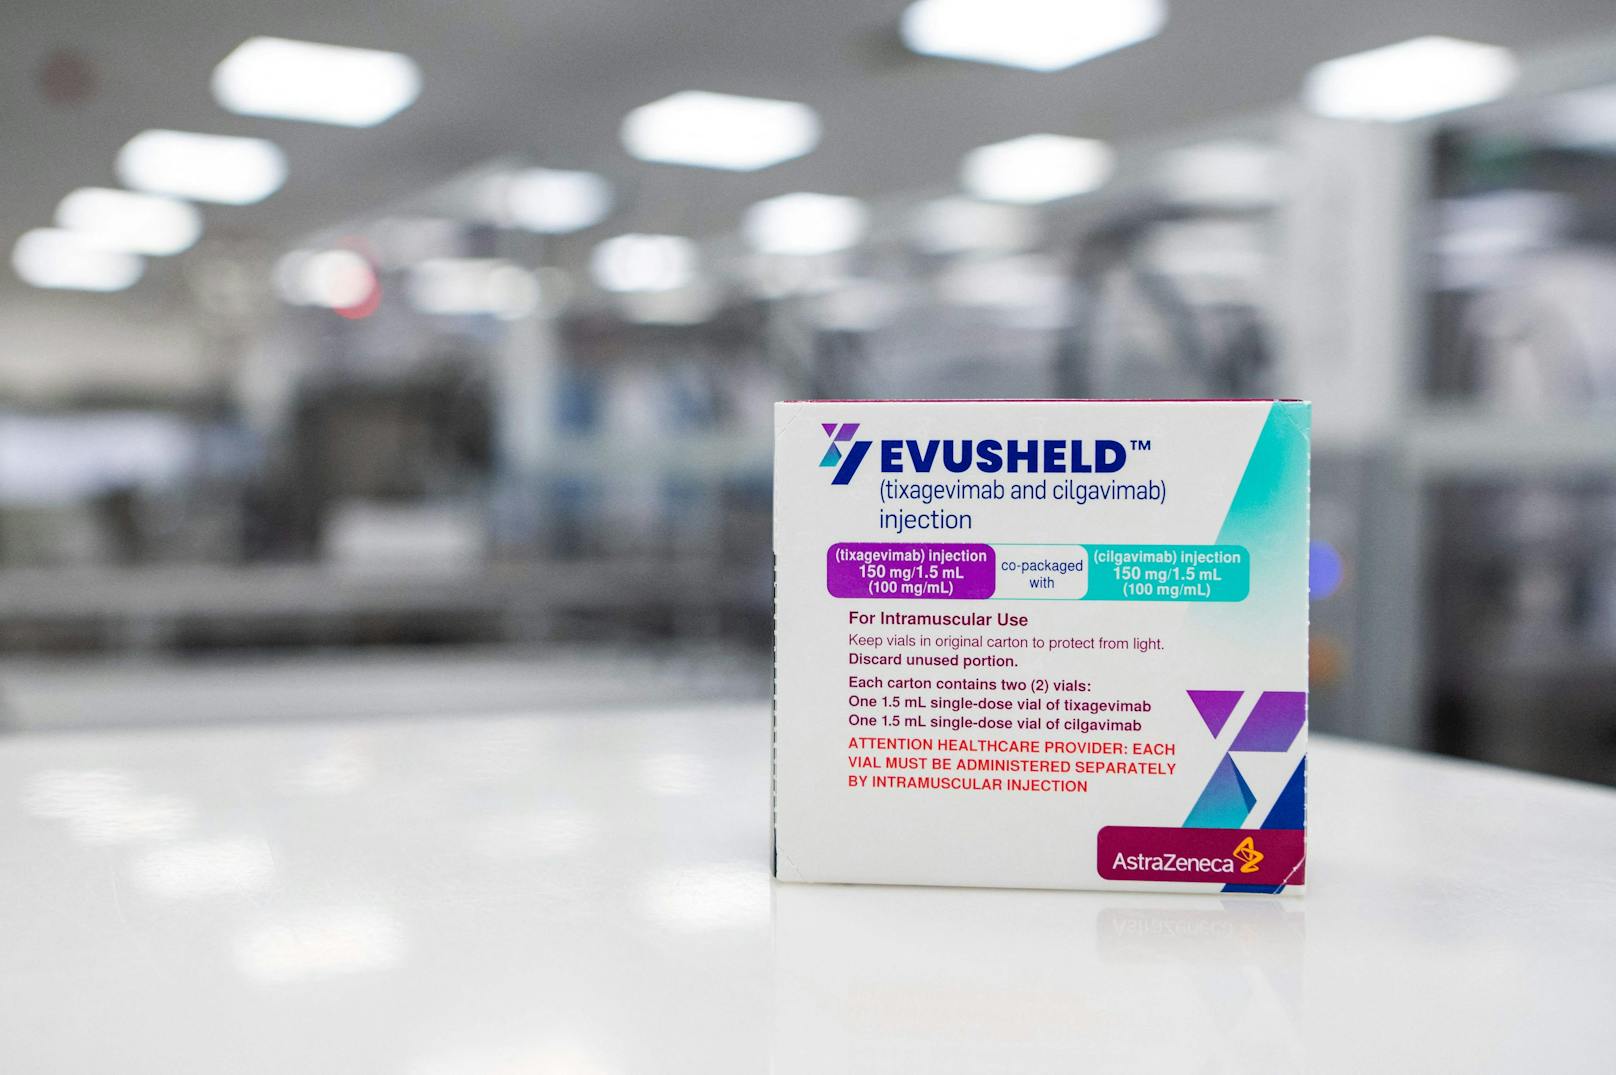 Das Covid-Prophylaxe-Medikament "Evusheld" soll einen Schutz für Hochrisiko-Patienten, bei denen eine Impfung keine Option ist, bieten können.